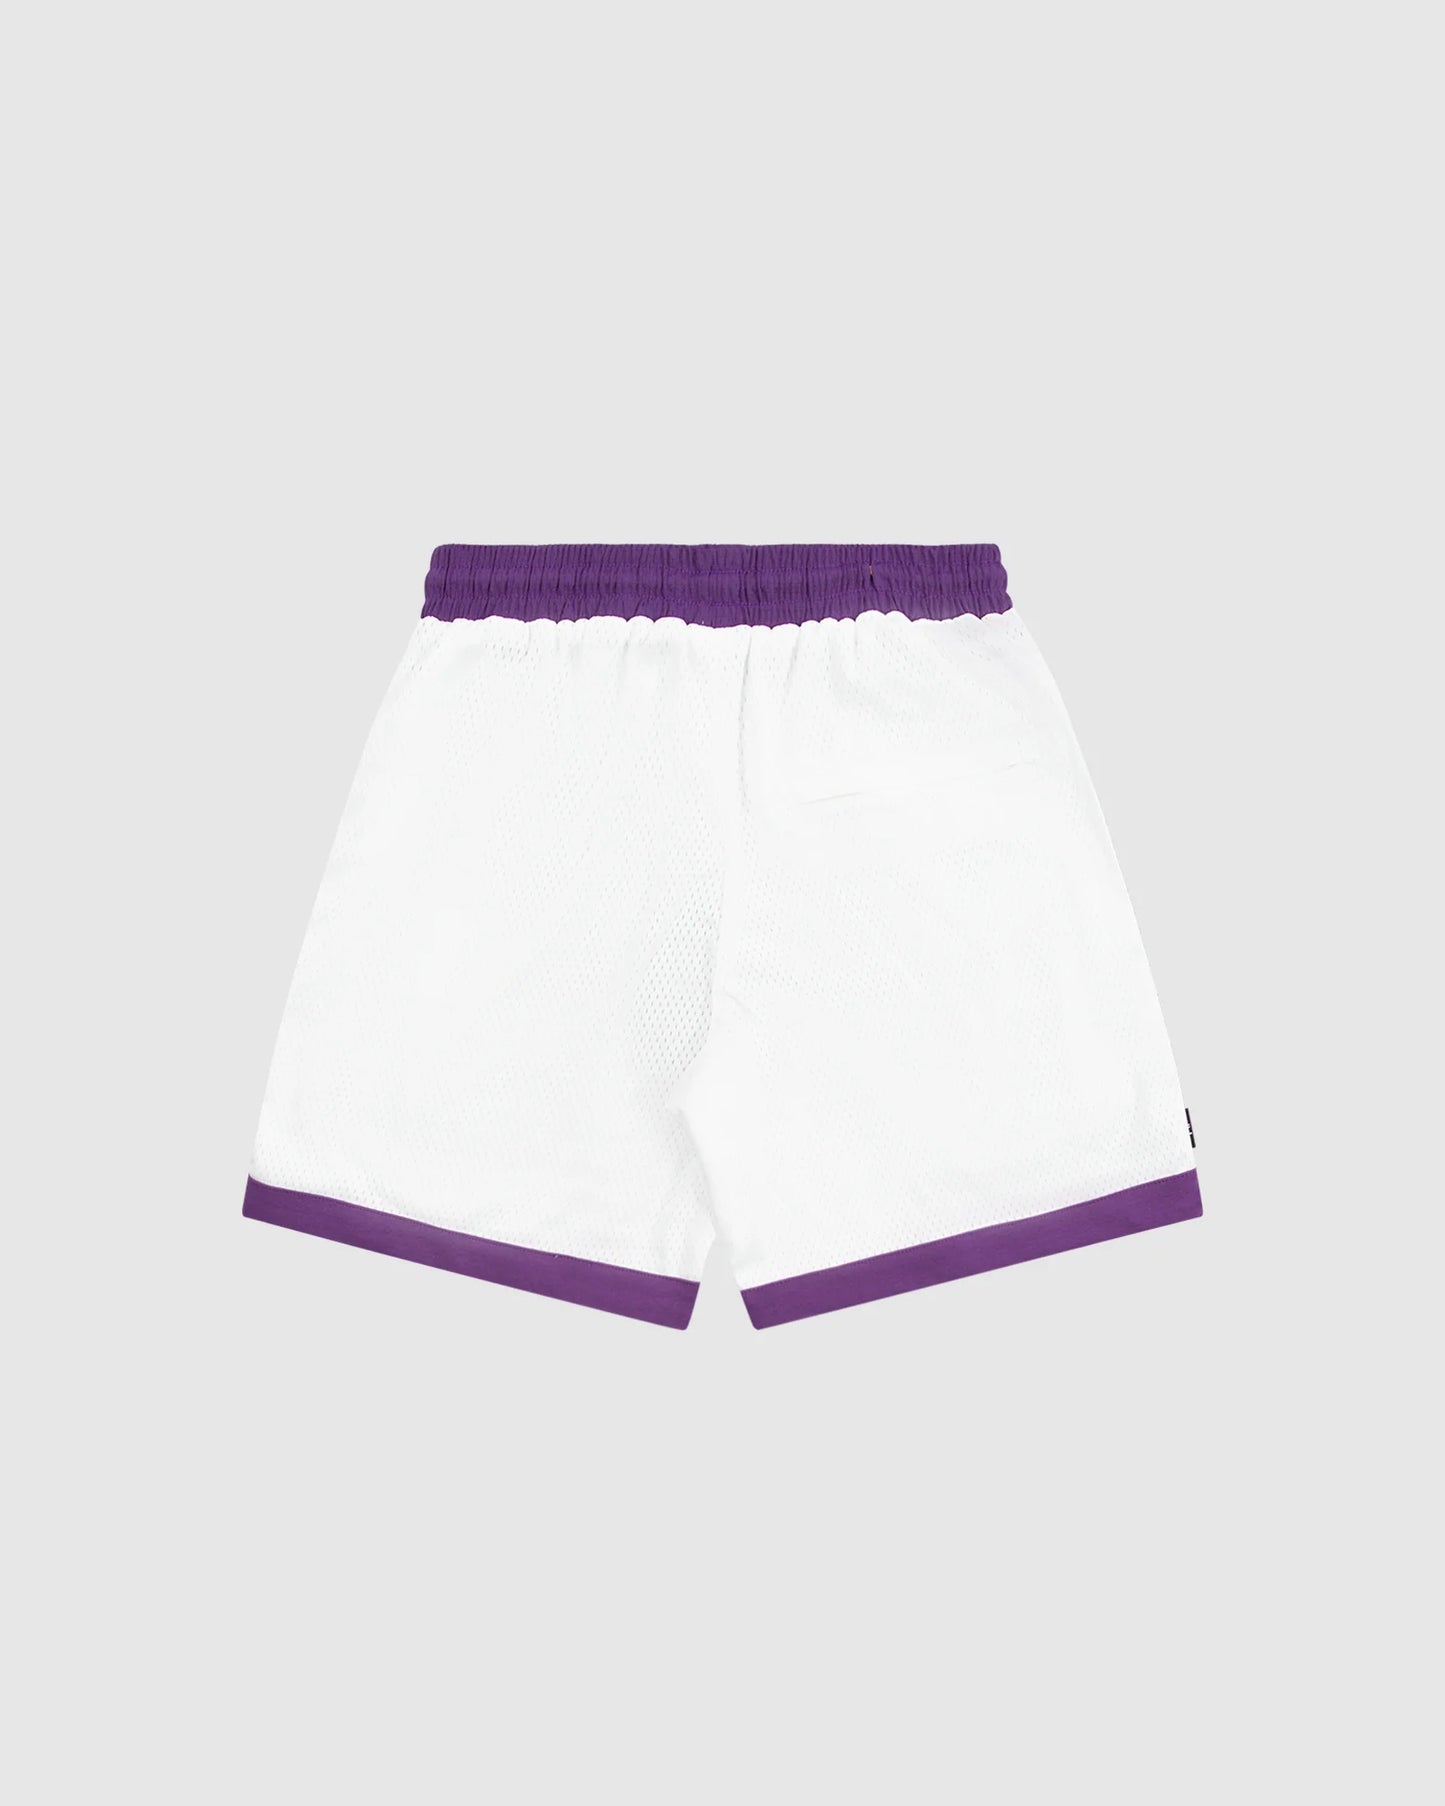 WNDRR Off Court Mens Elastic Waist Court Shorts - White/Purple